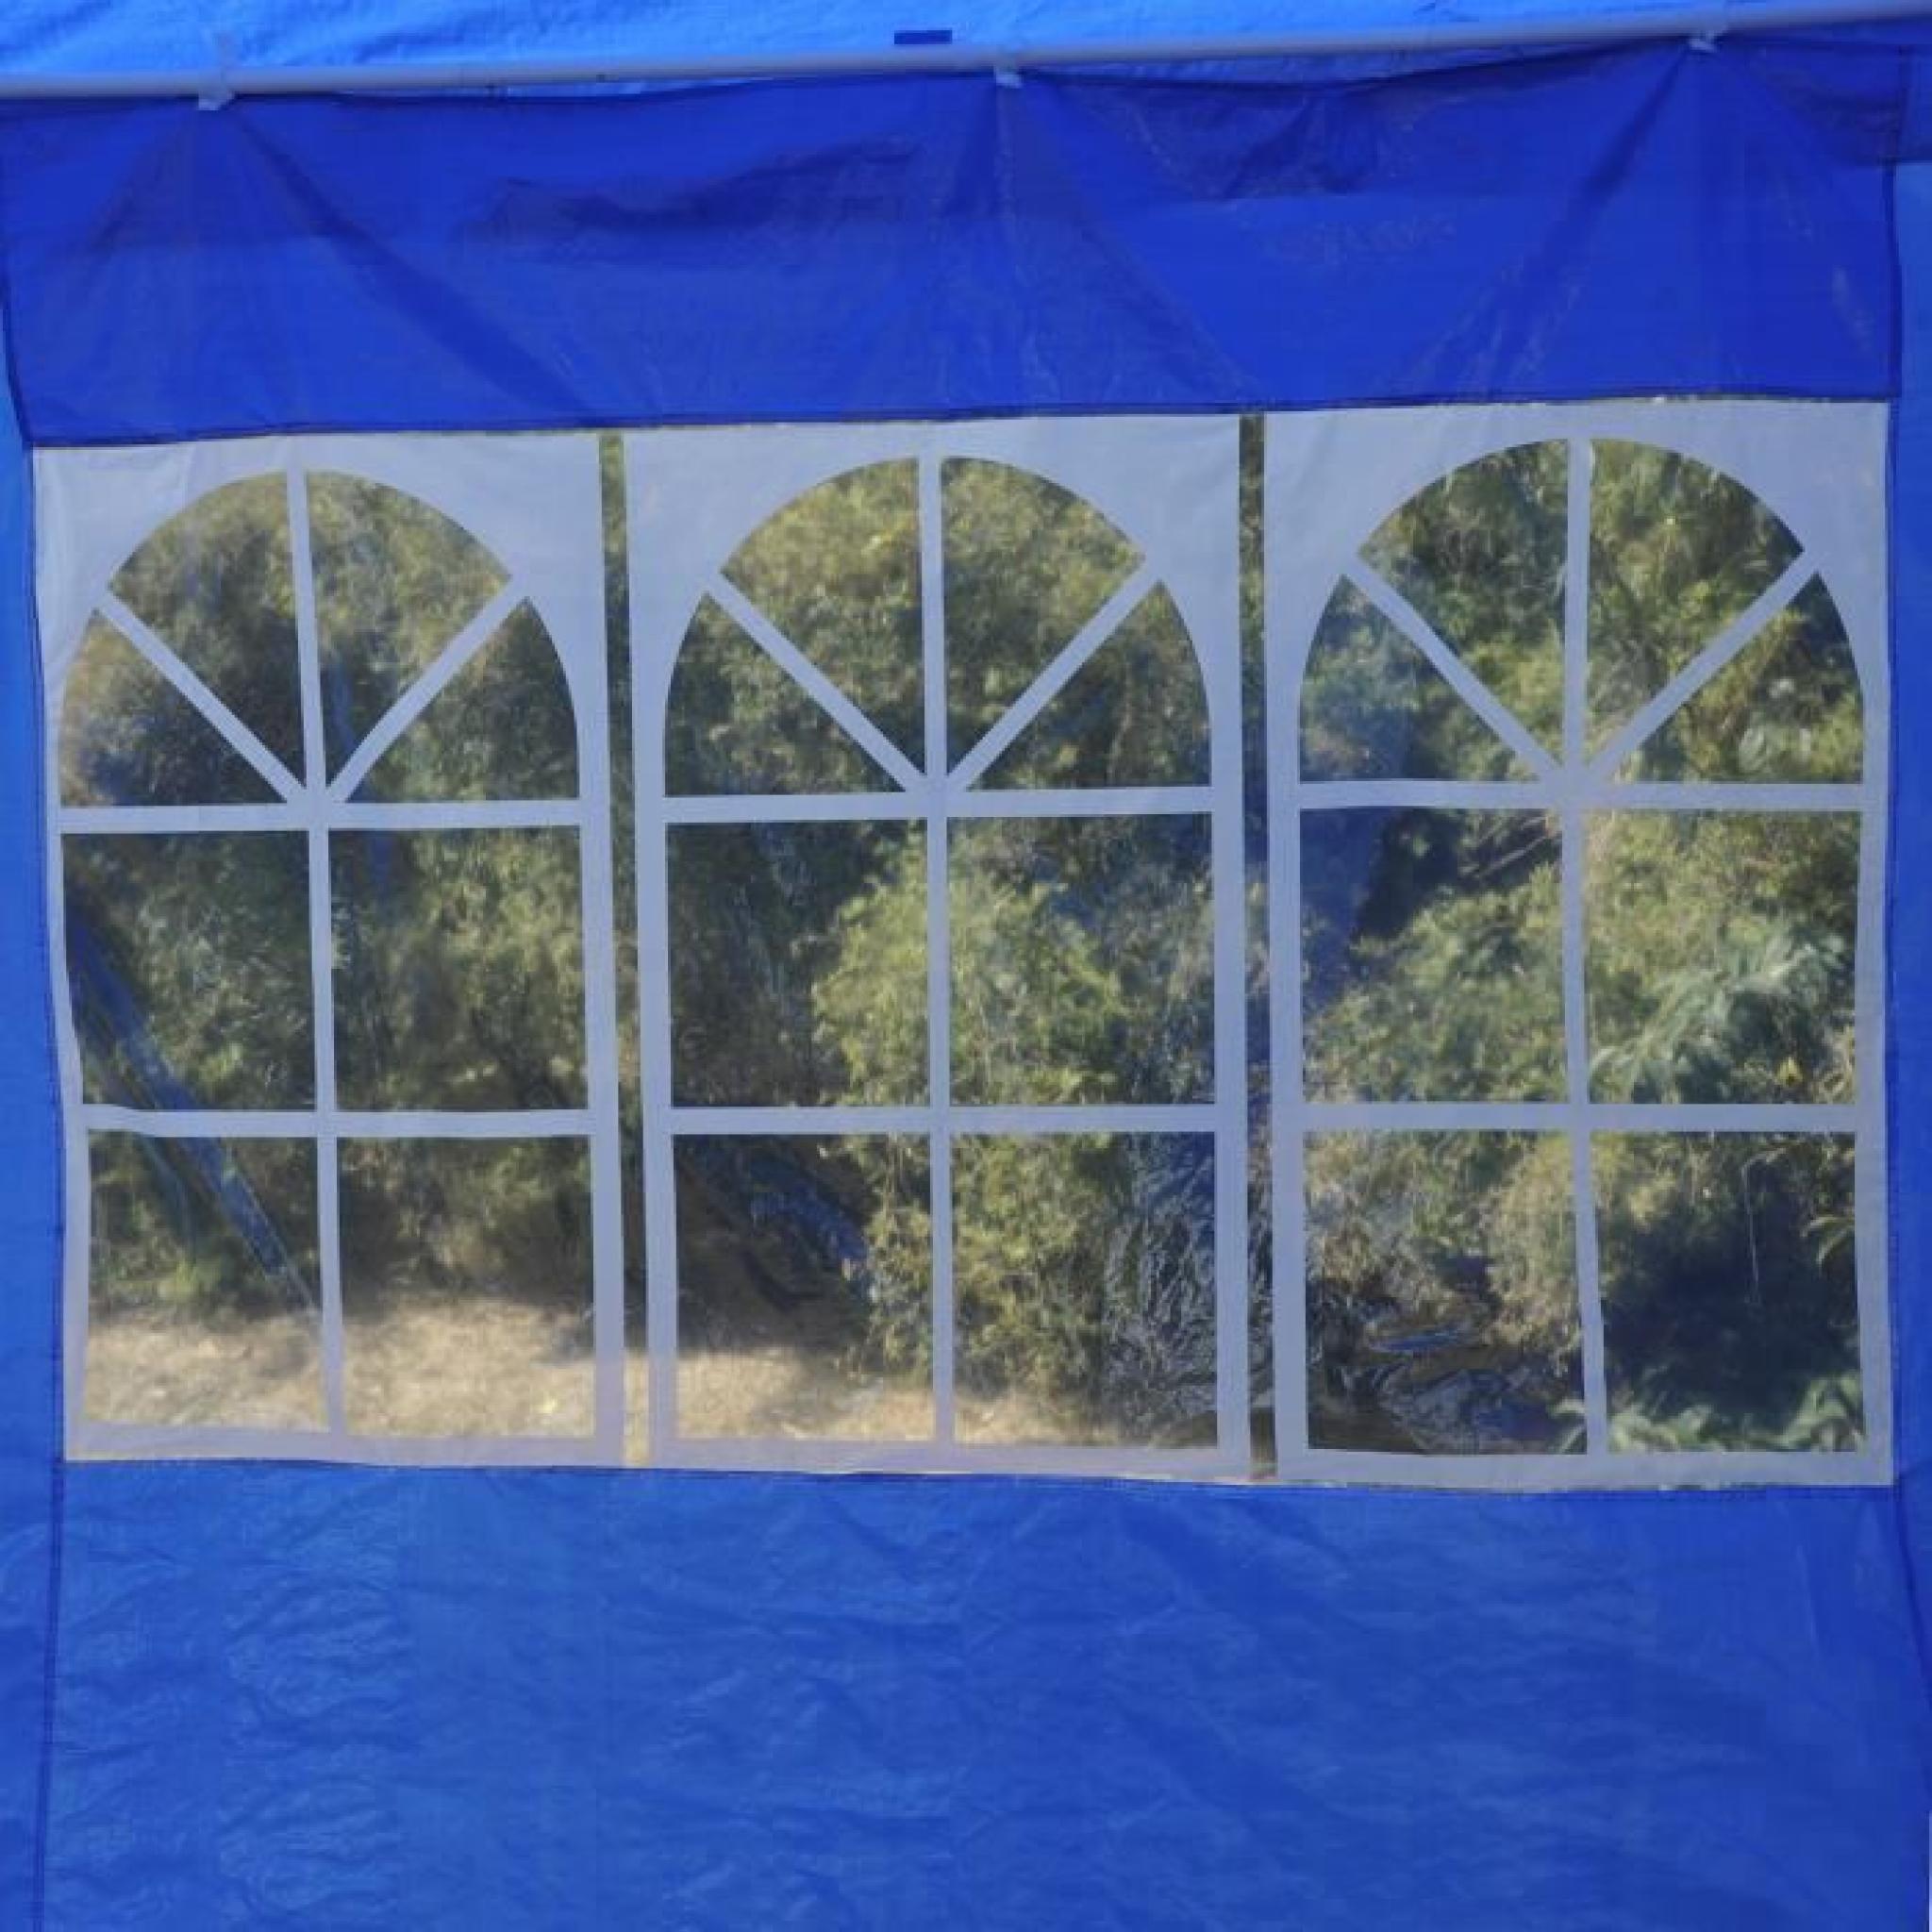 Outsunny Tonnelle Tente de Jardin Chapiteau de Réception Imperméable 6x3x2.55m Bleu pas cher